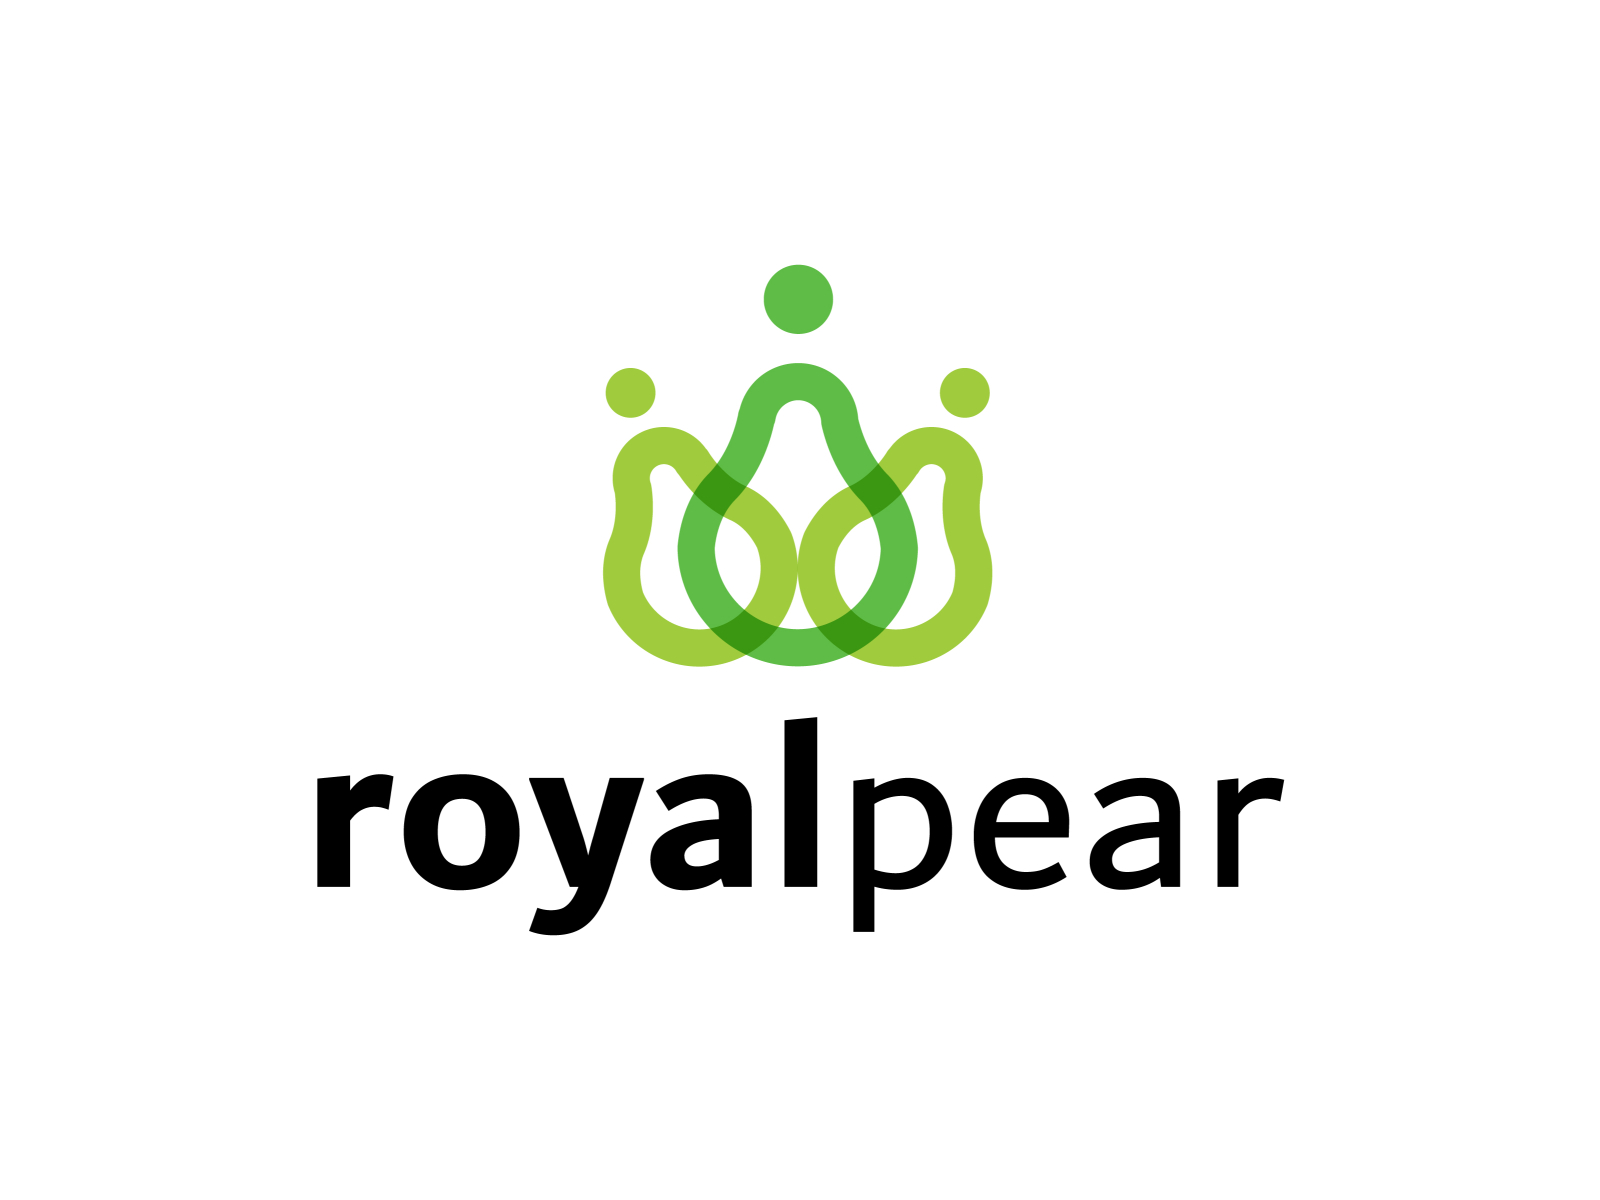 Pear Phone Logo